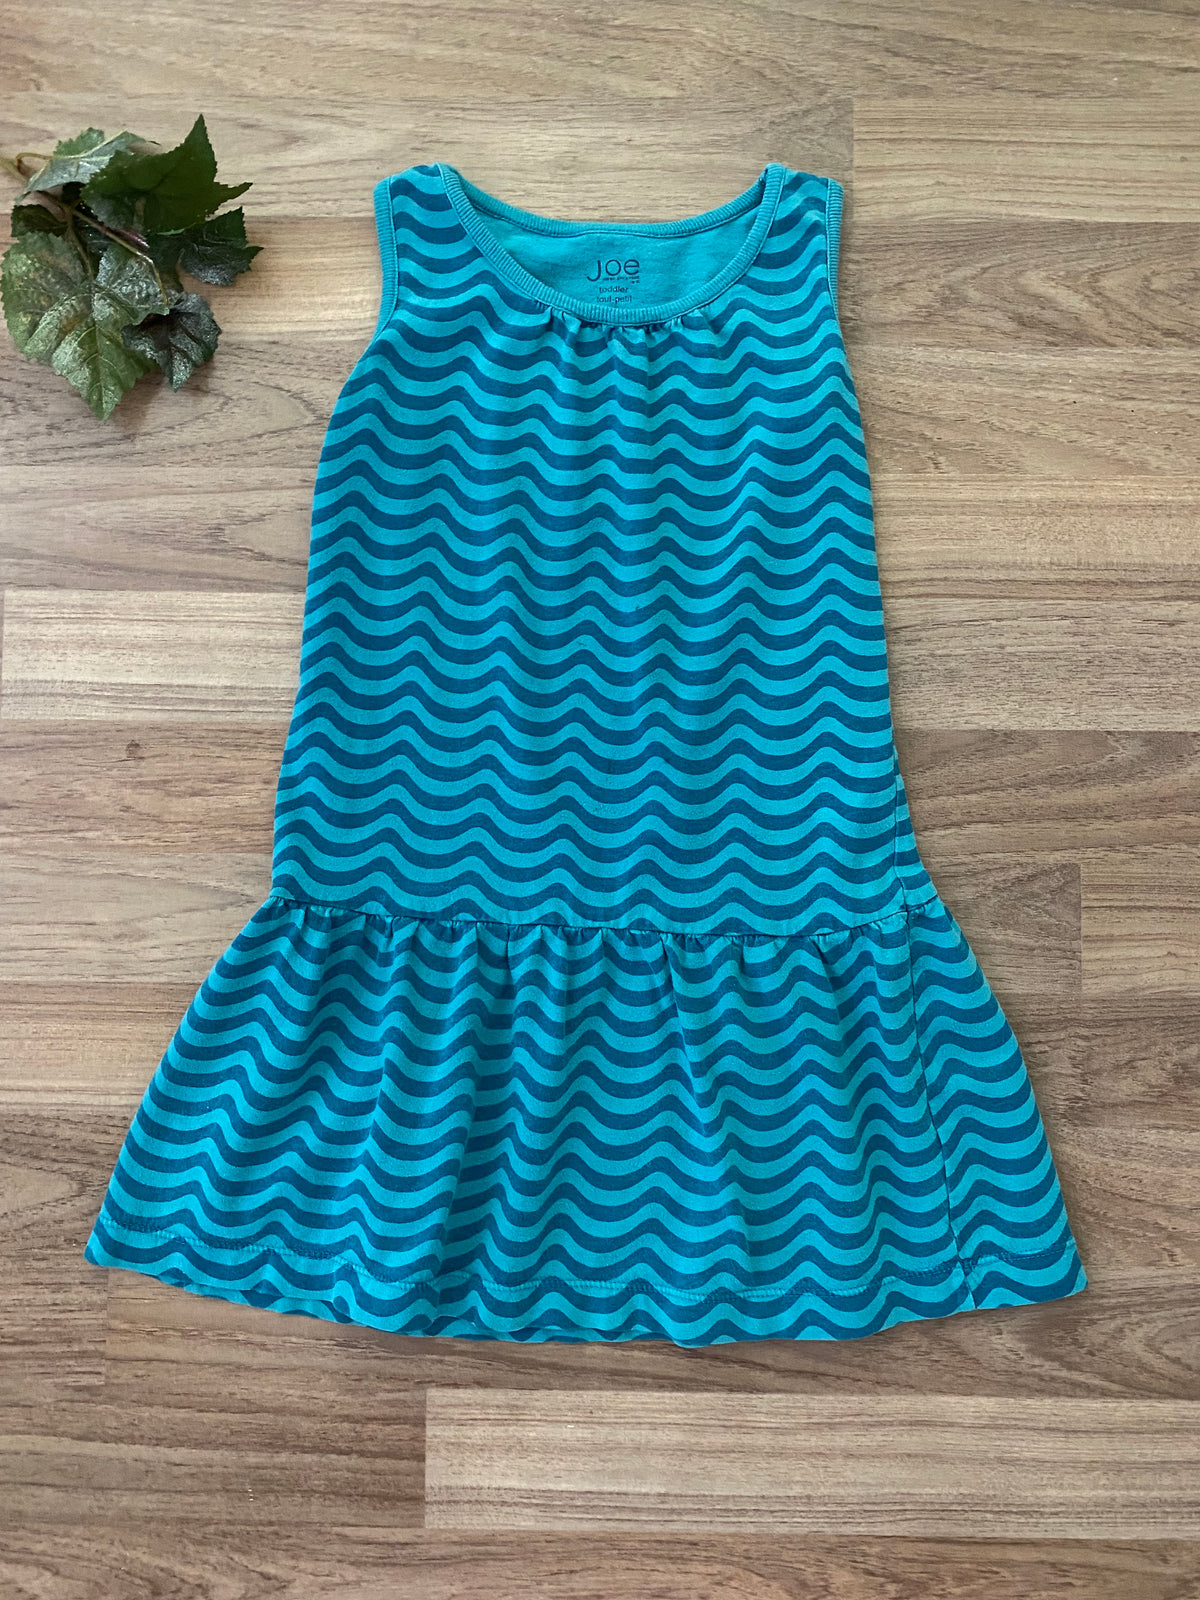 Summer Dress (Girls Size 5)